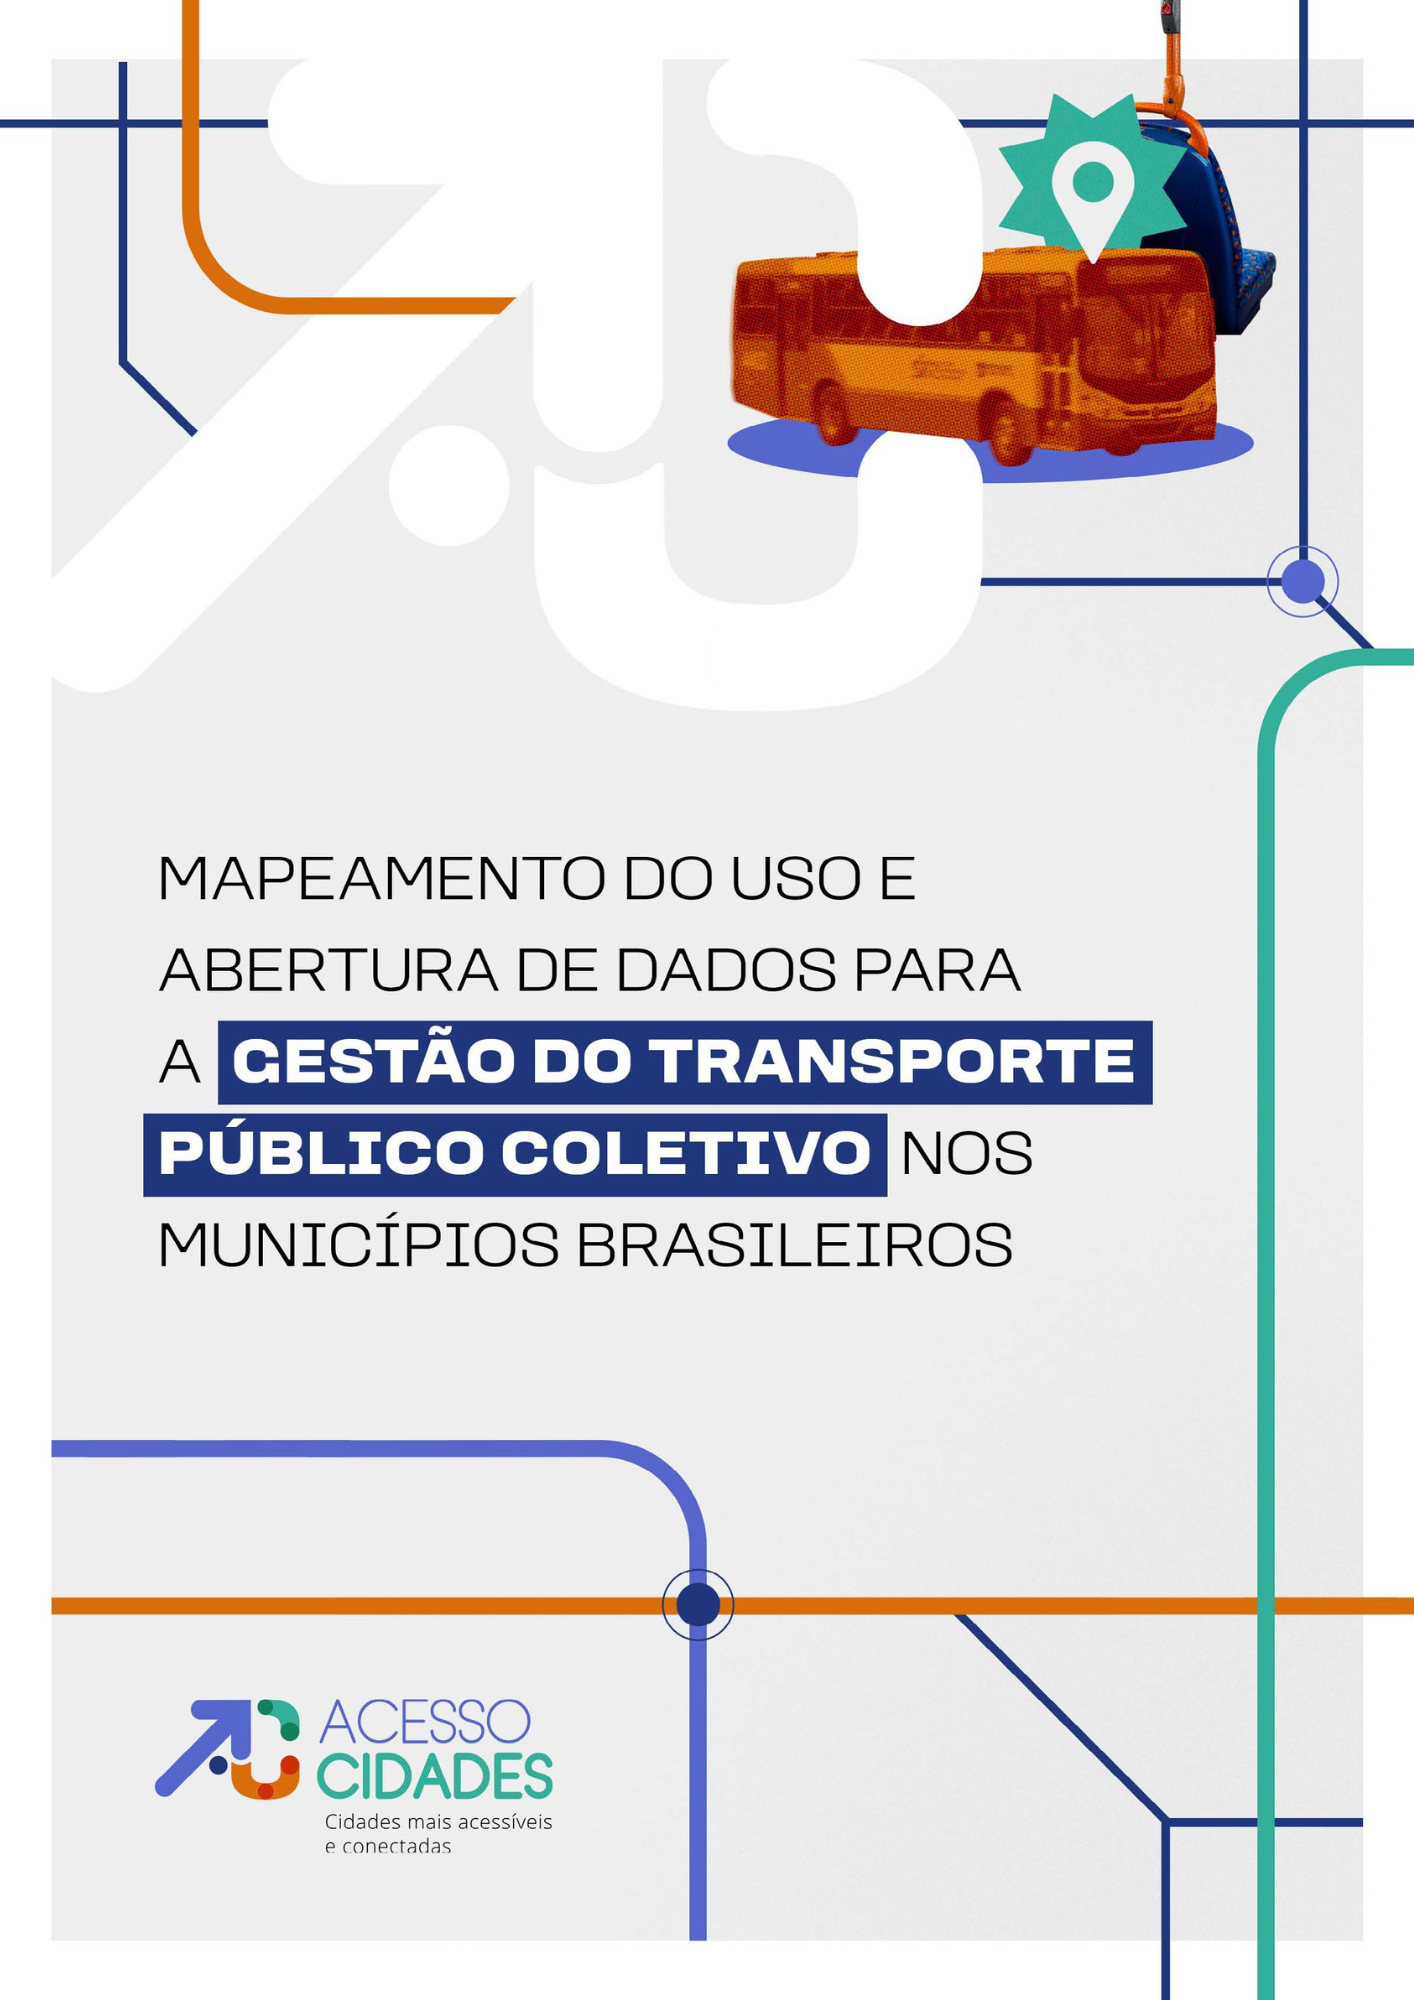 Mapeamento do uso e abertura de dados para a gestão do transporte público coletivo nos municípios brasileiros